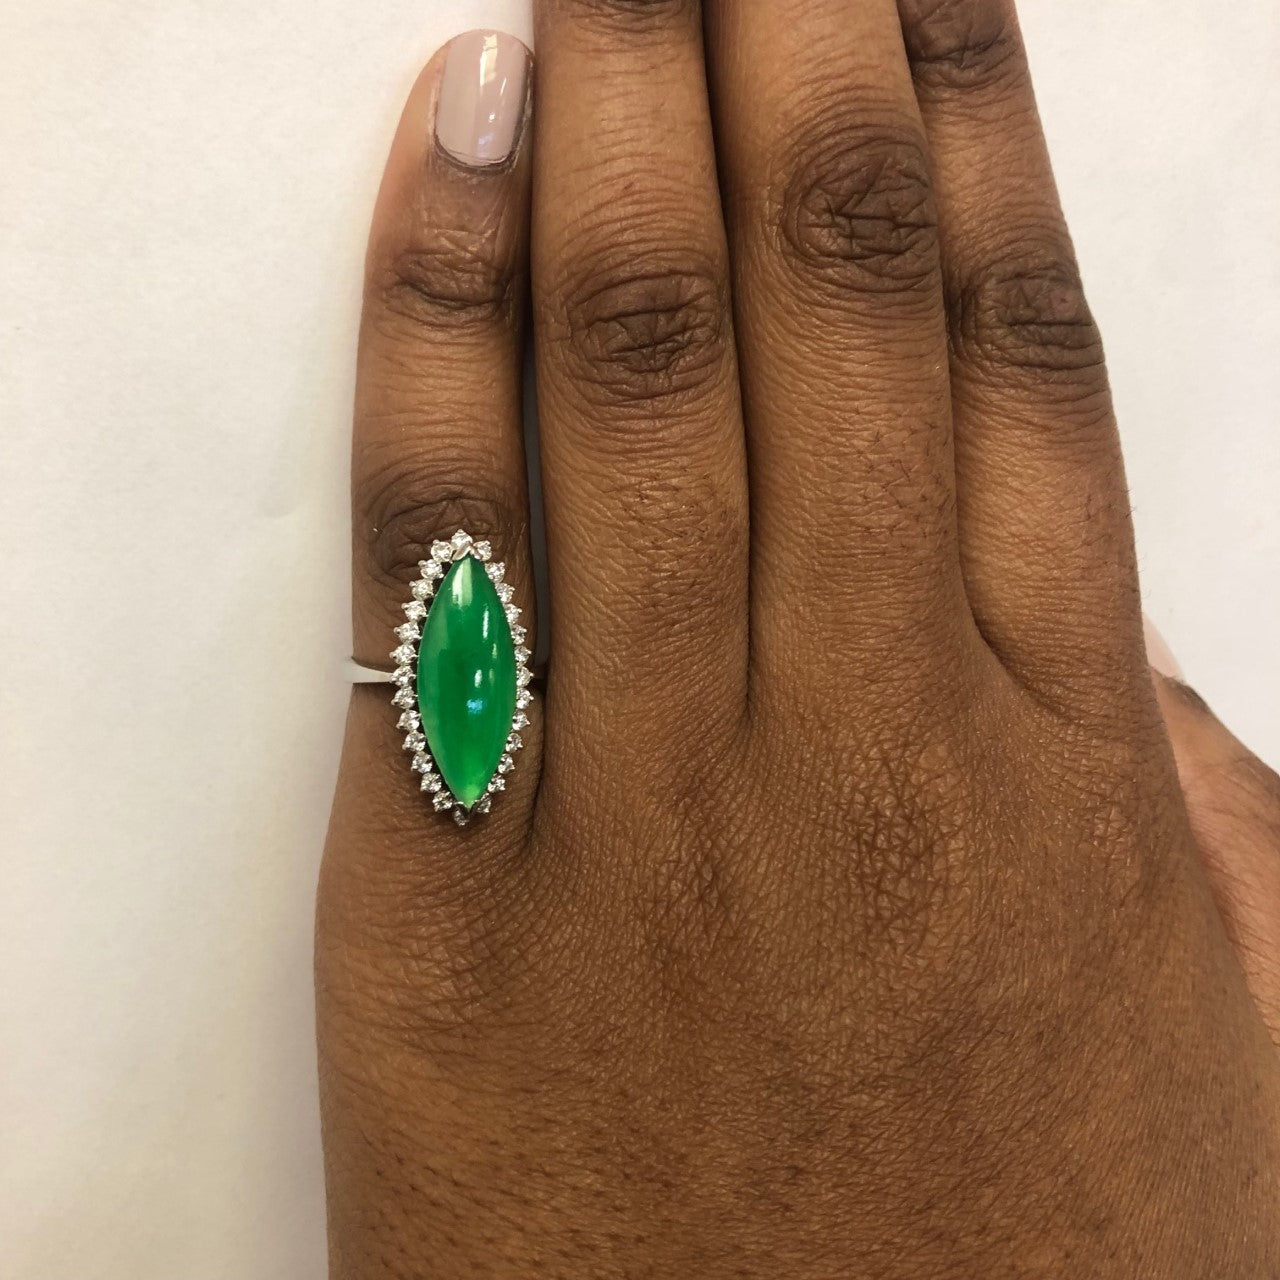 Marquise Jadeite & Diamond Halo Ring | 2.50ct, 0.42ctw | SZ 6.25 |